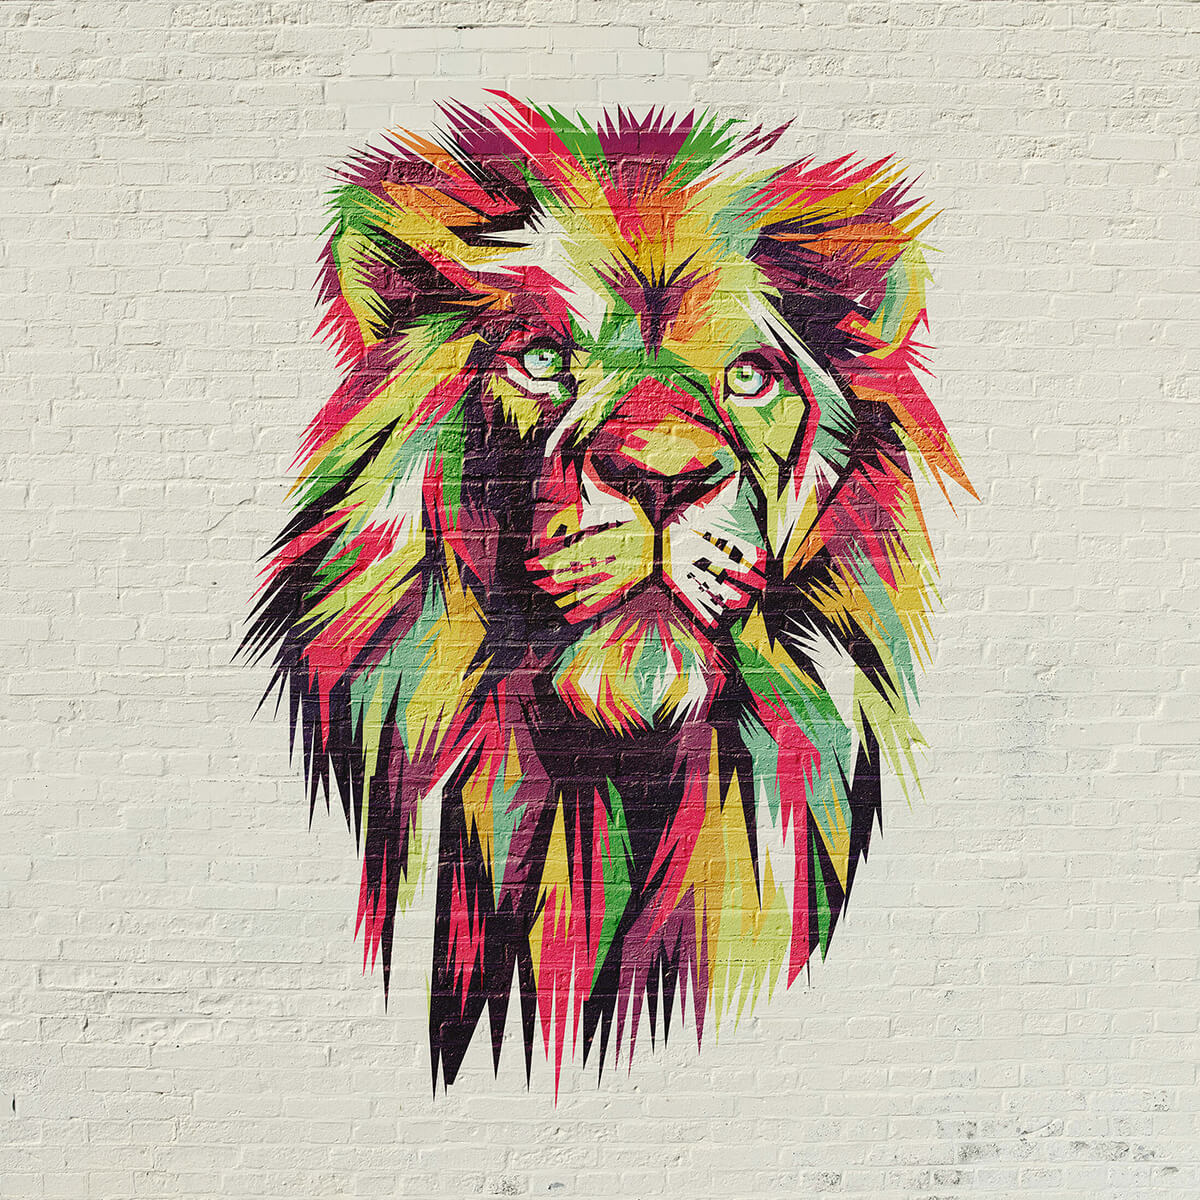 Graffiti of a lion